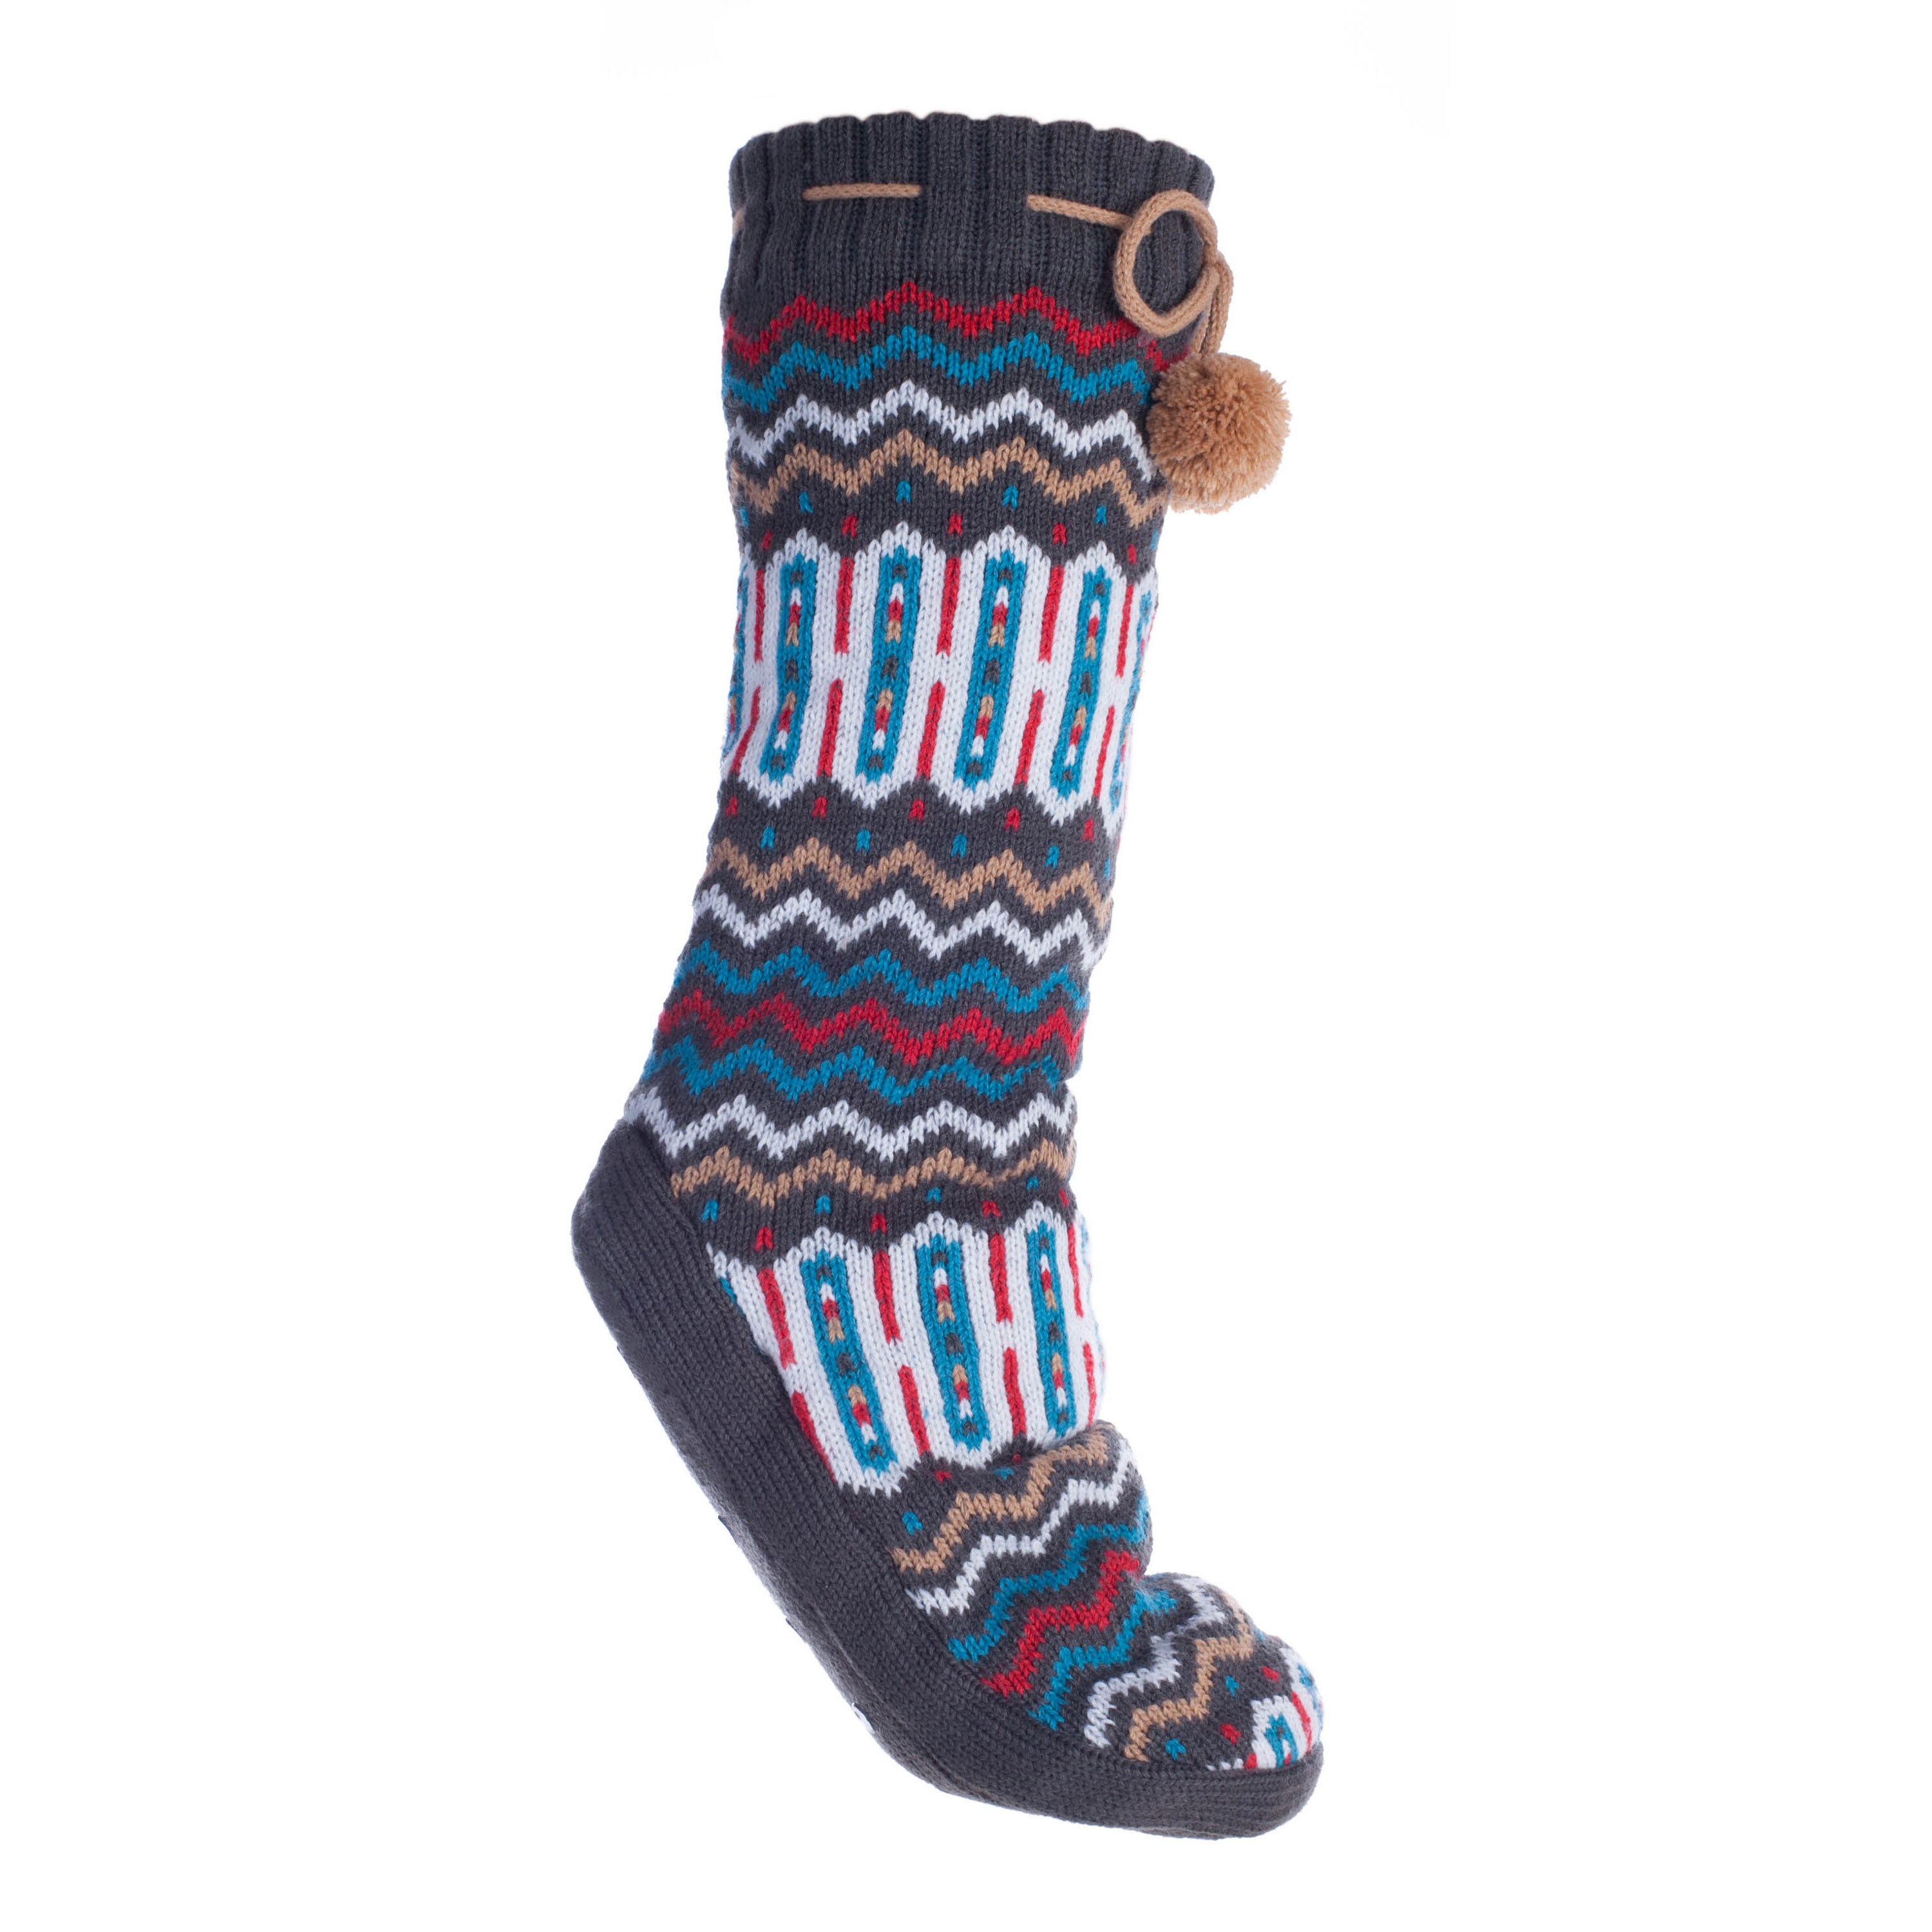 bootie socks with pom poms